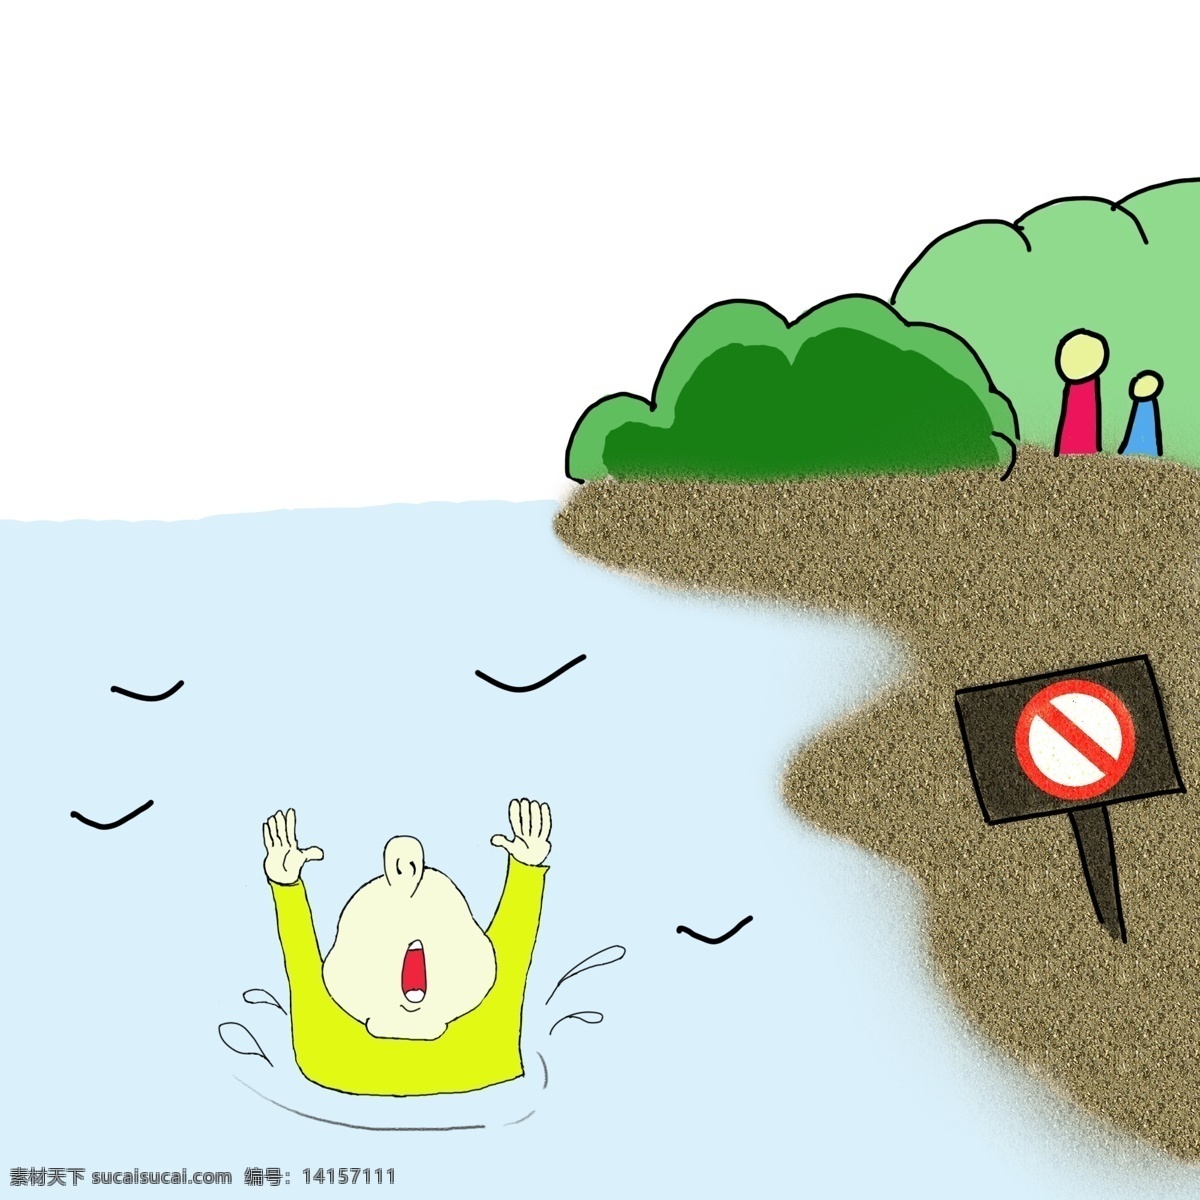 禁止游泳 儿童溺水 儿童安全教育 溺水 手绘 卡通 插画 禁止牌 儿童游泳 落水 落水救人